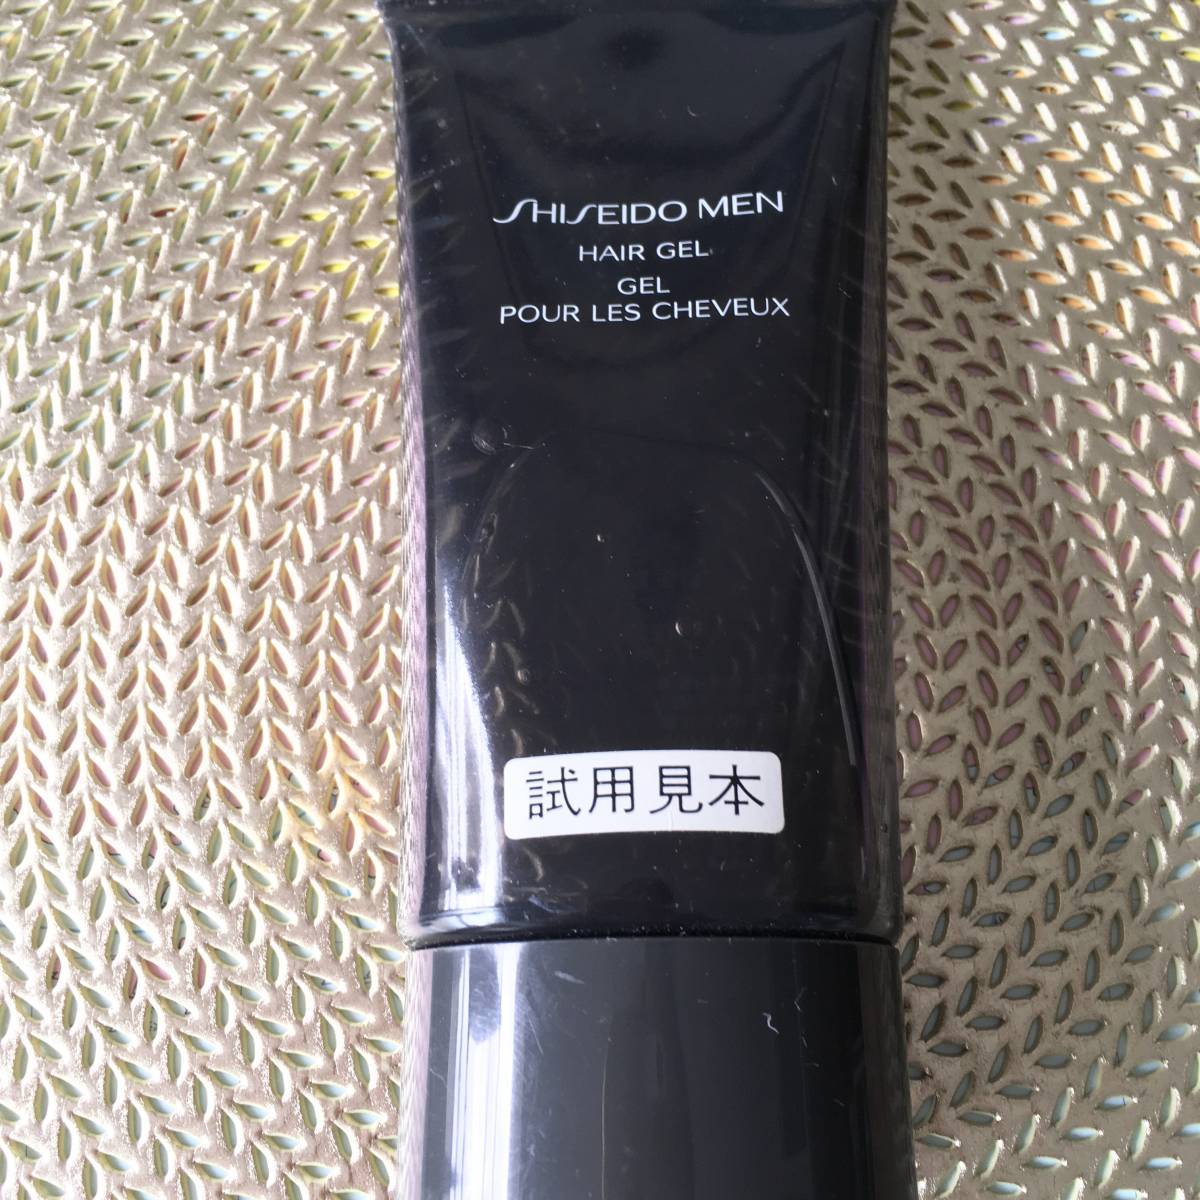  Shiseido men волосы гель * стайлинг стоимость Shiseido мужской стайлинг стоимость HAIR GELsiseidou men . для образец MADE IN JAPANsiseidouMEN образец 